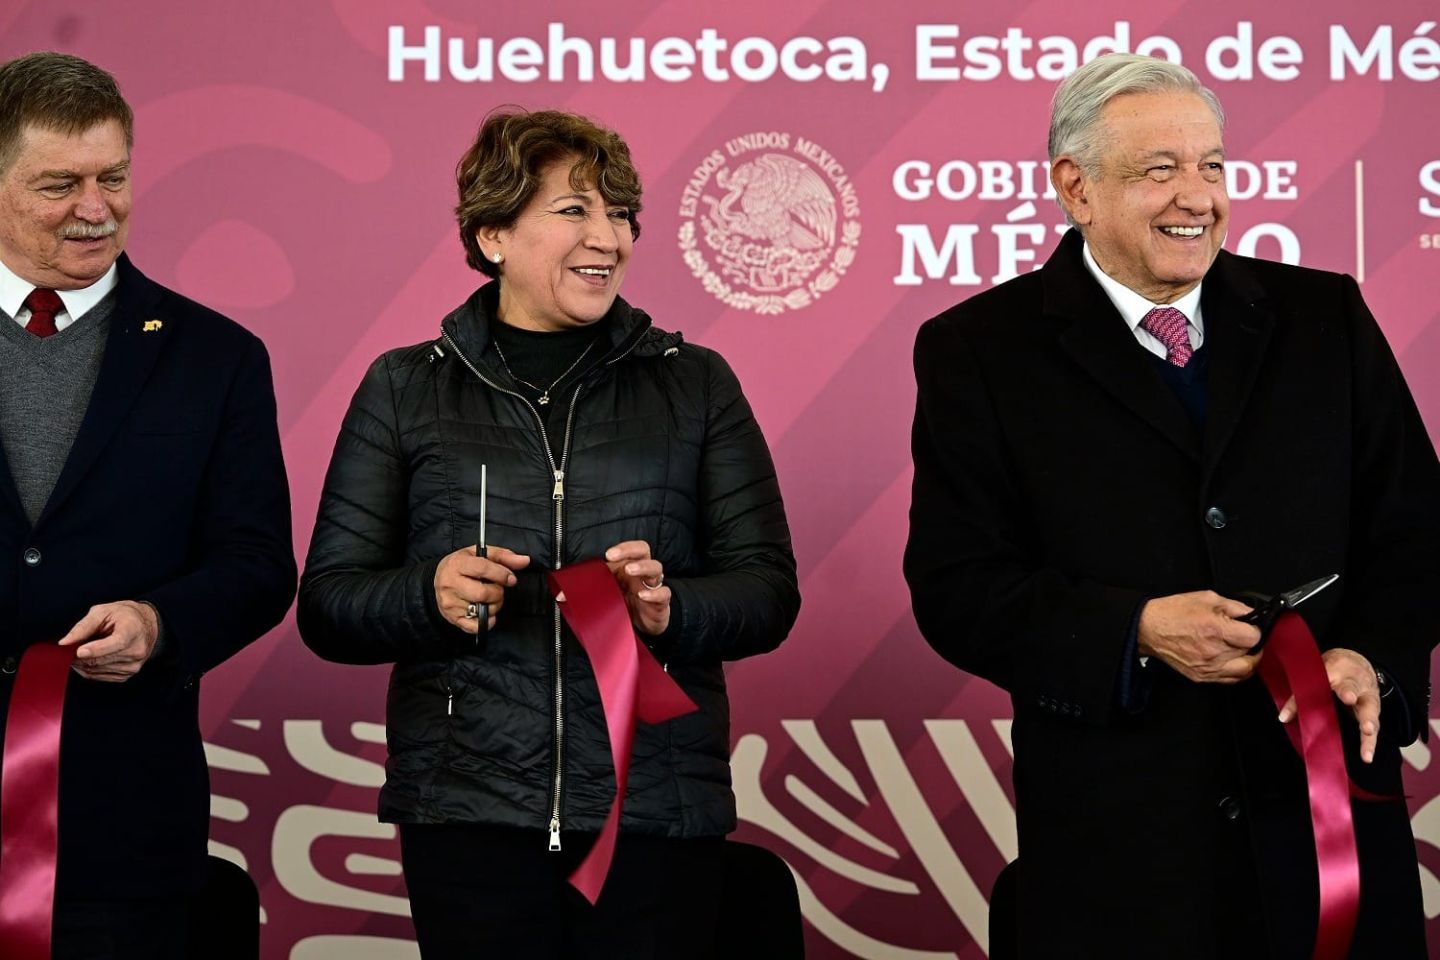 La Megafarmacia del Bienestar es Real, el Presidente López Obrador y la
Gobernadora Delfina Gómez Inauguran la Farmacia más Grande del Mundo
